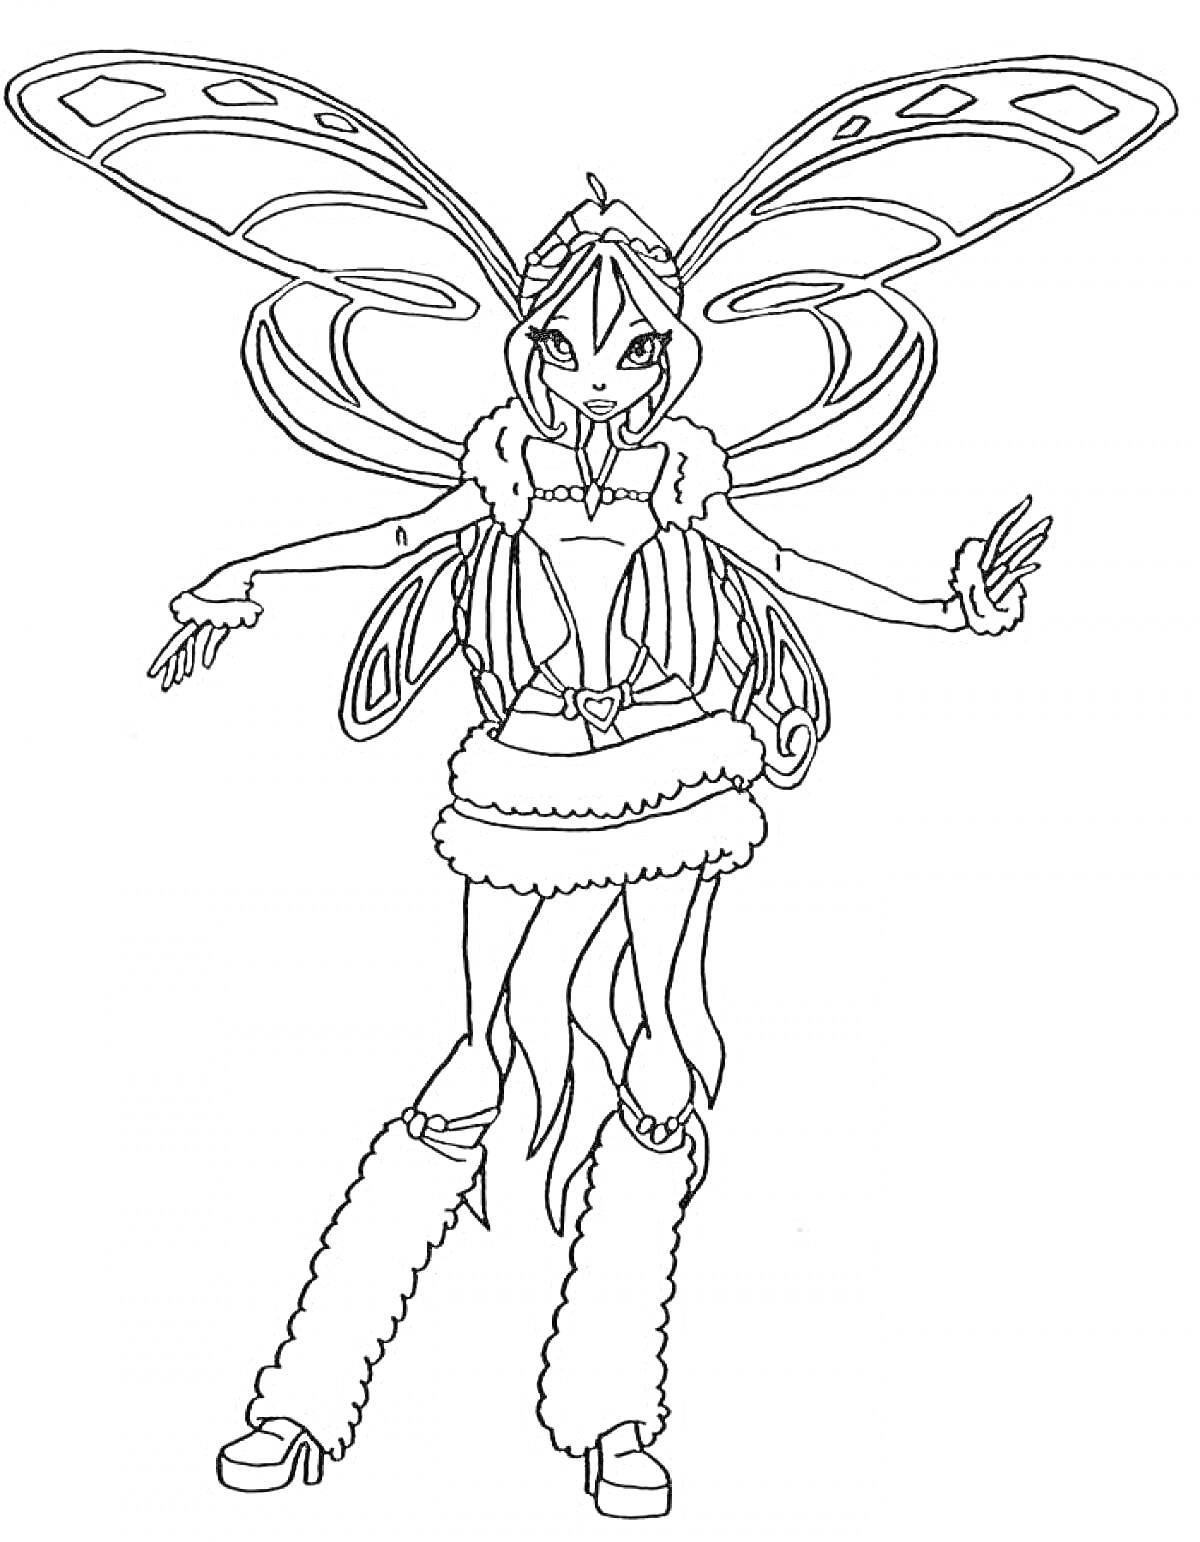 Раскраска Винкс Беливикс: Волшебная фея в наряде с меховой отделкой, раскинувшая руки в стороны, с большими крыльями, обутая в туфли и высокие меховые гамаши.